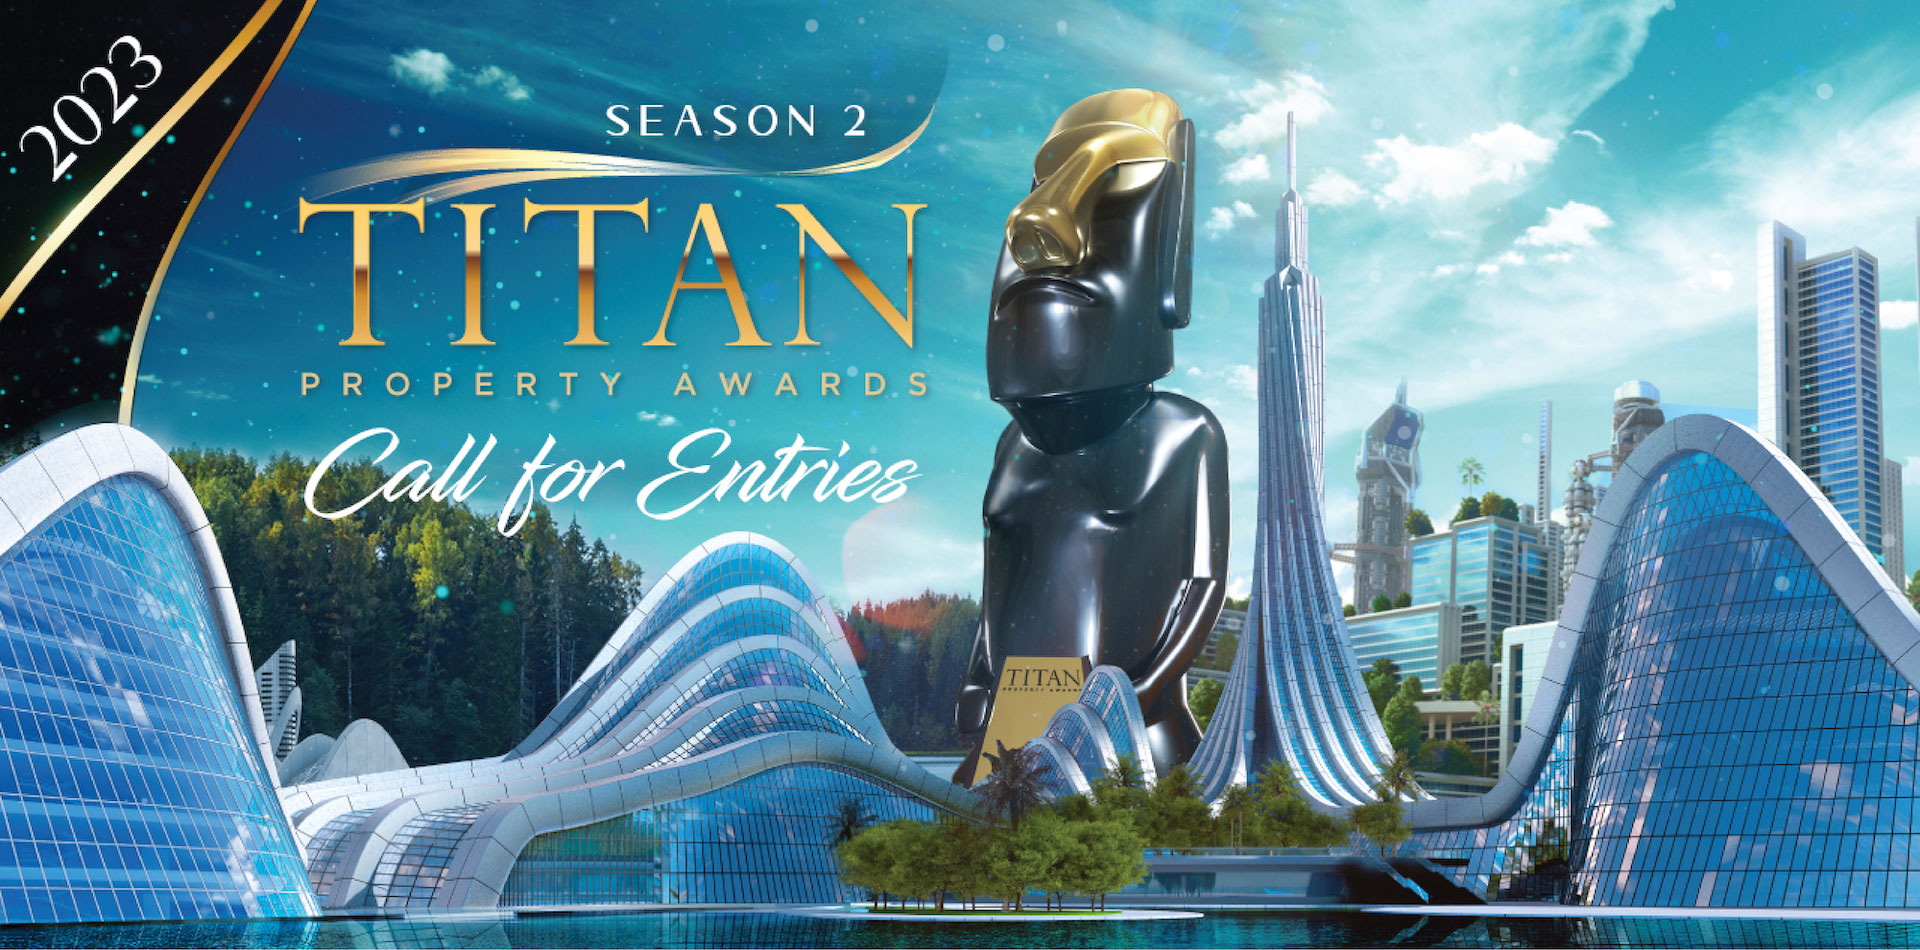 2023 TITAN Property Awards: Season 2 is now open for entries!